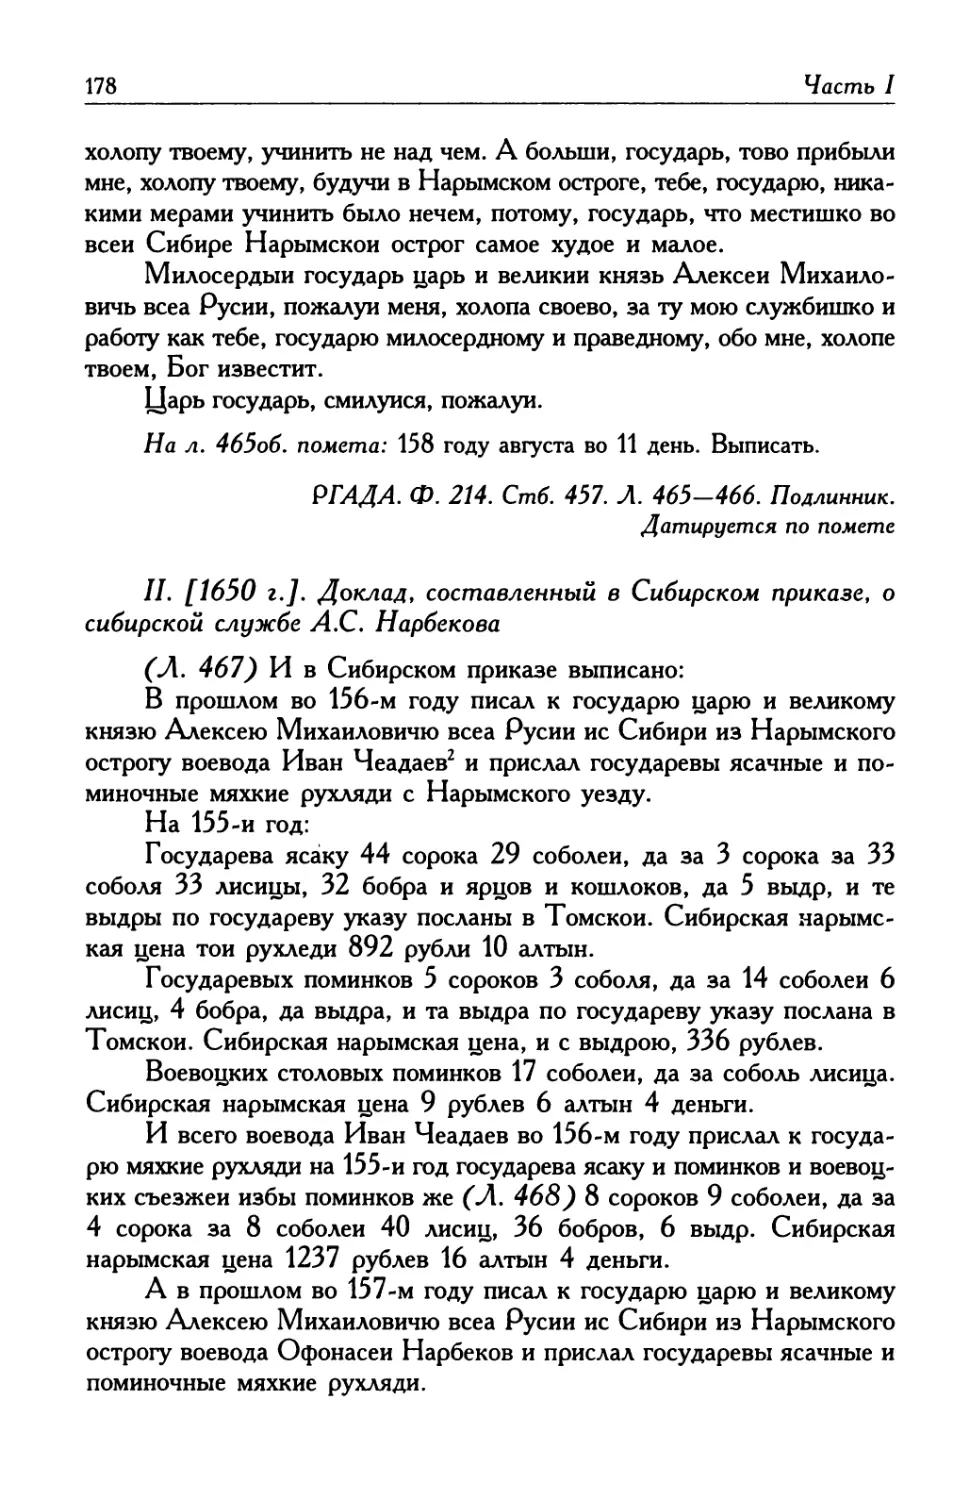 II. [1650 г.] Доклад, составленный в Сибирском приказе, о сибирской службе А. С. Нарбекова